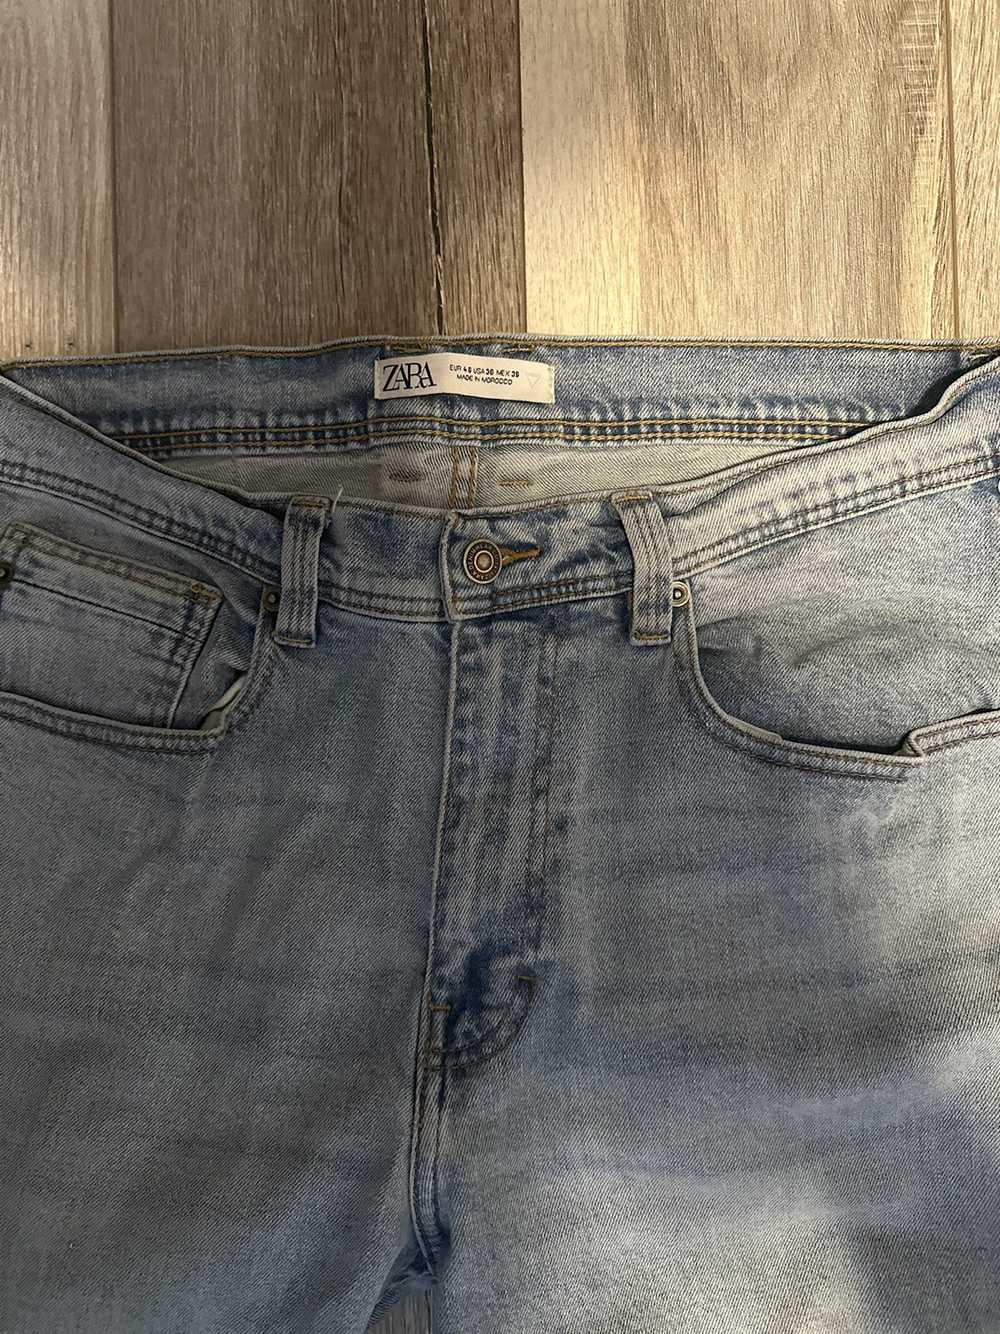 Zara Zara denim jeans - image 2